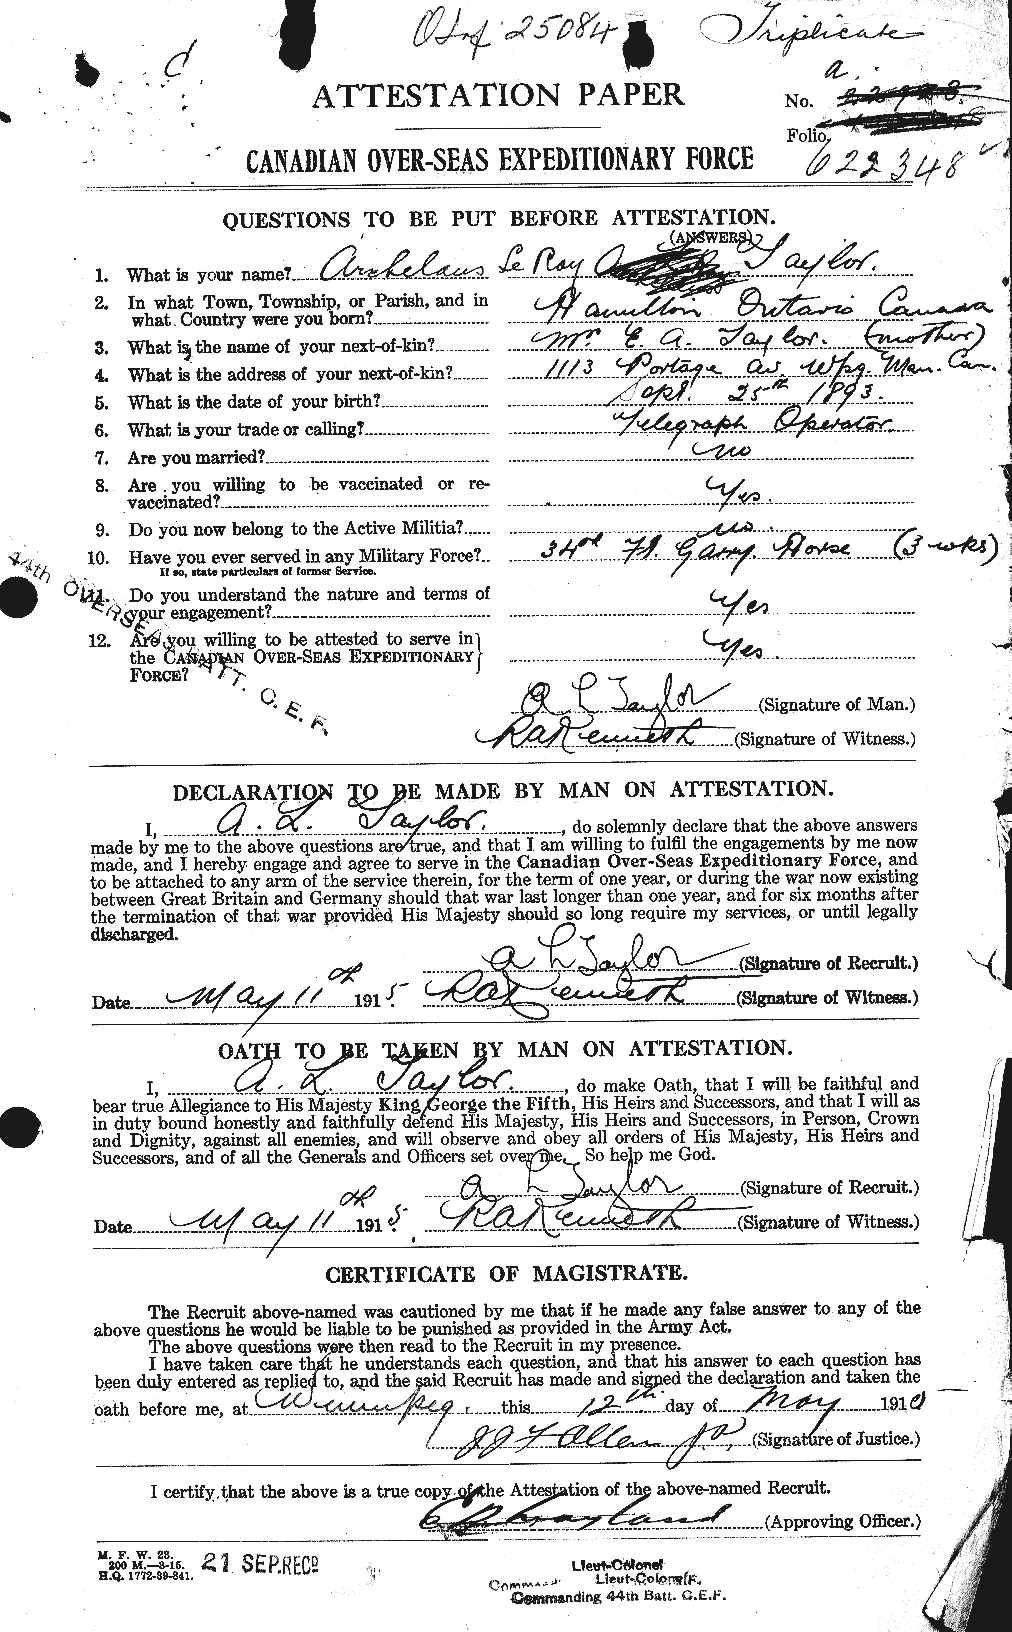 Dossiers du Personnel de la Première Guerre mondiale - CEC 626235a